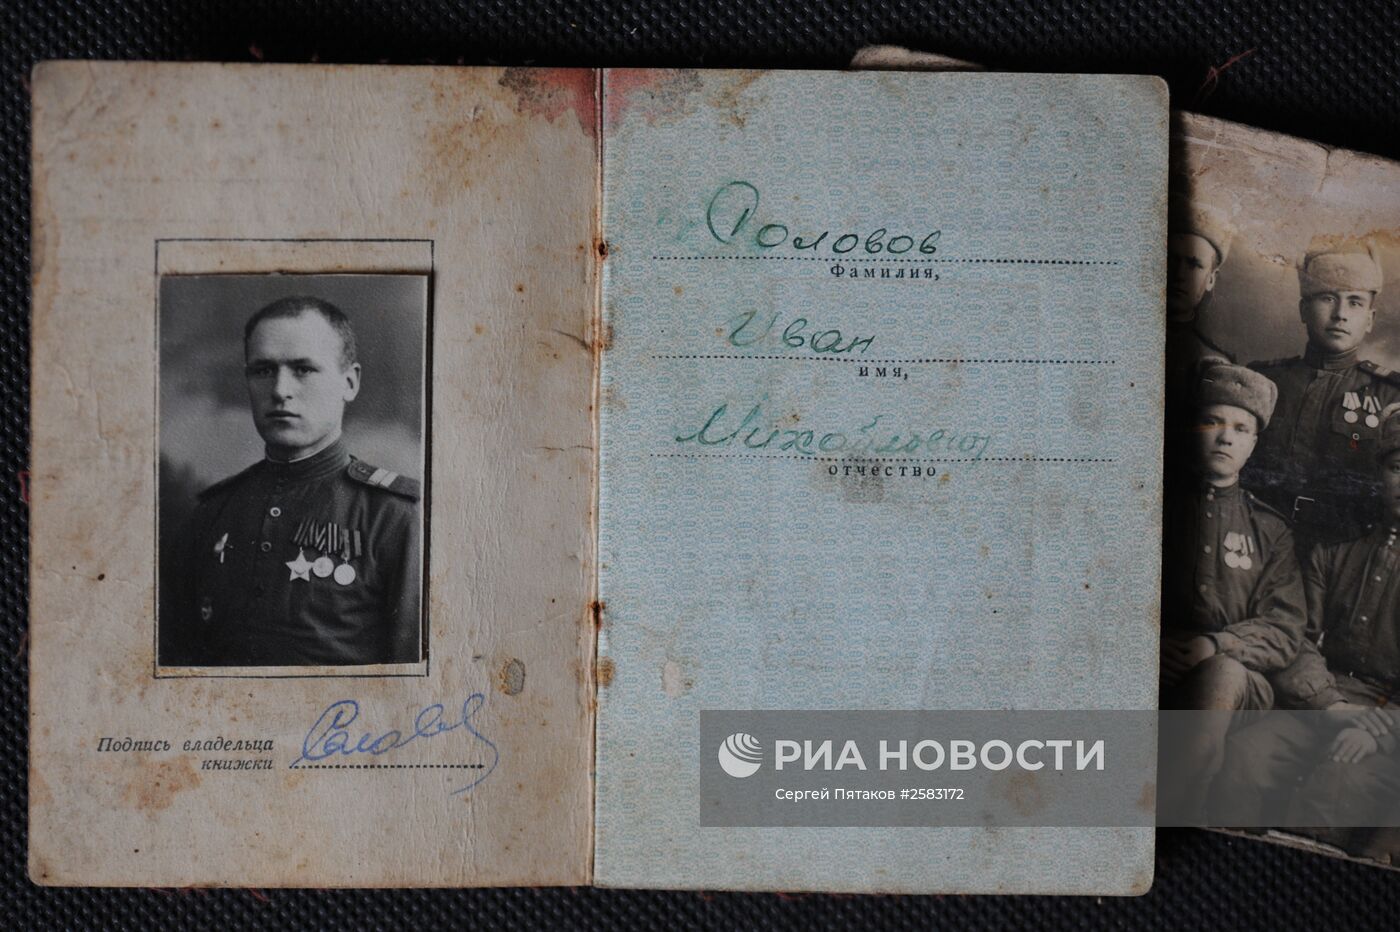 Фотоматериалы и публикации газеты "Красная звезда" периода Великой Отечественной войны